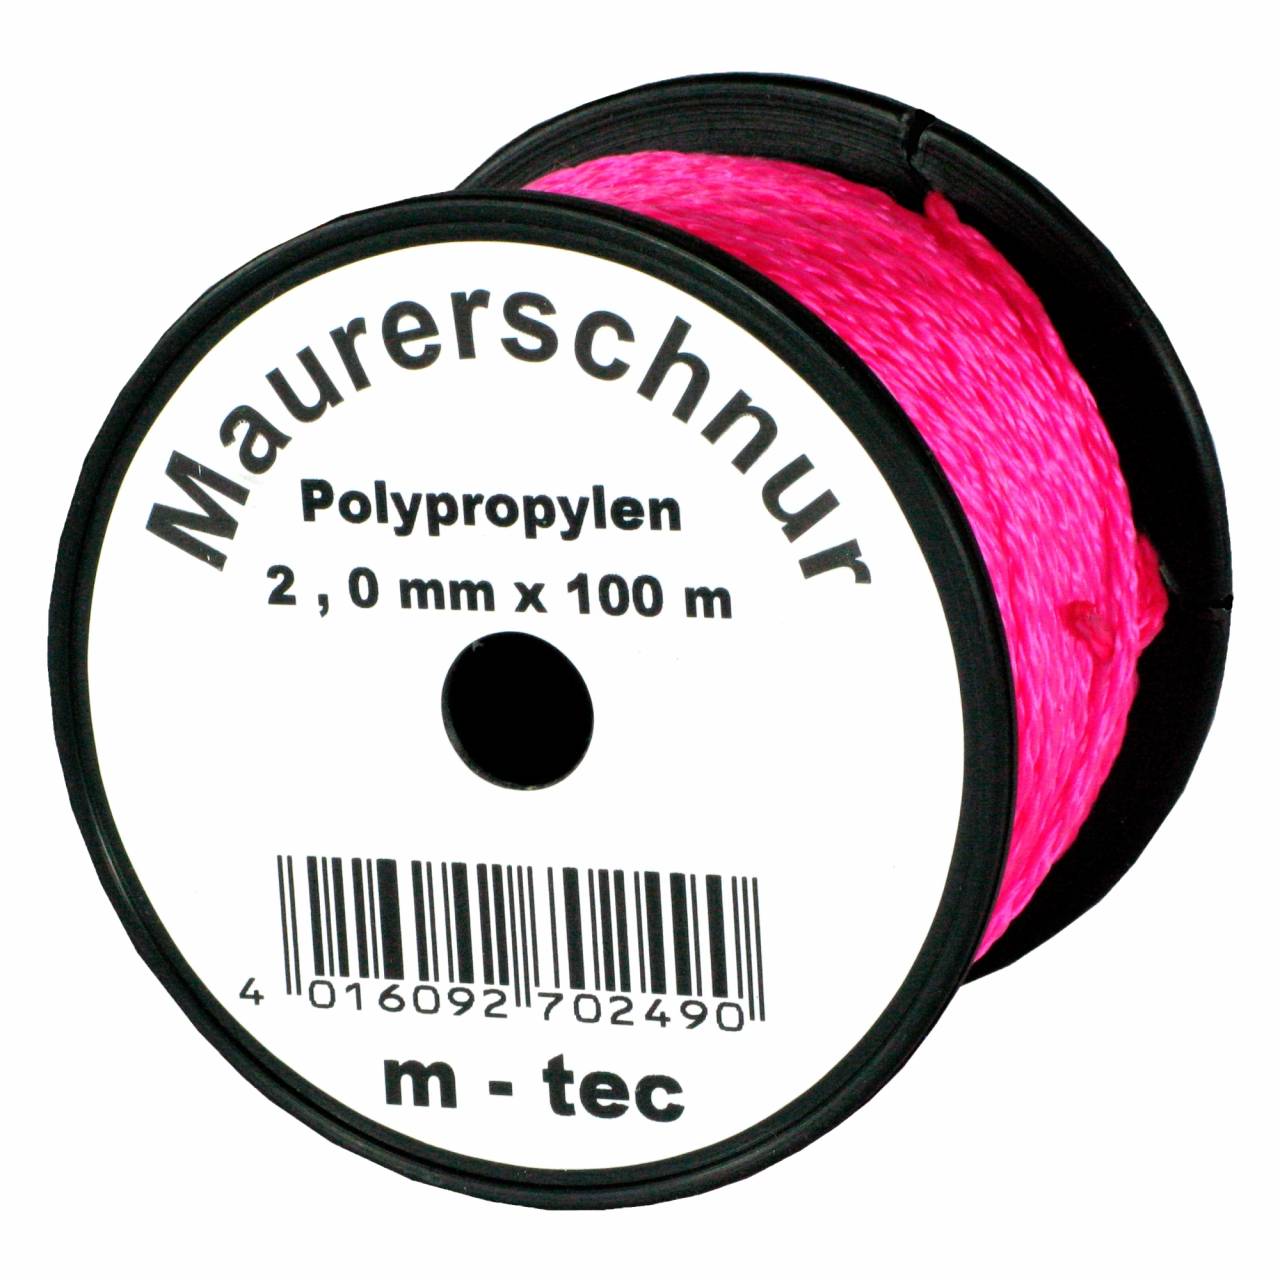 Lot-Maurerschnur 100 m x Ø 2,0 mm Pink-Fluoreszierend